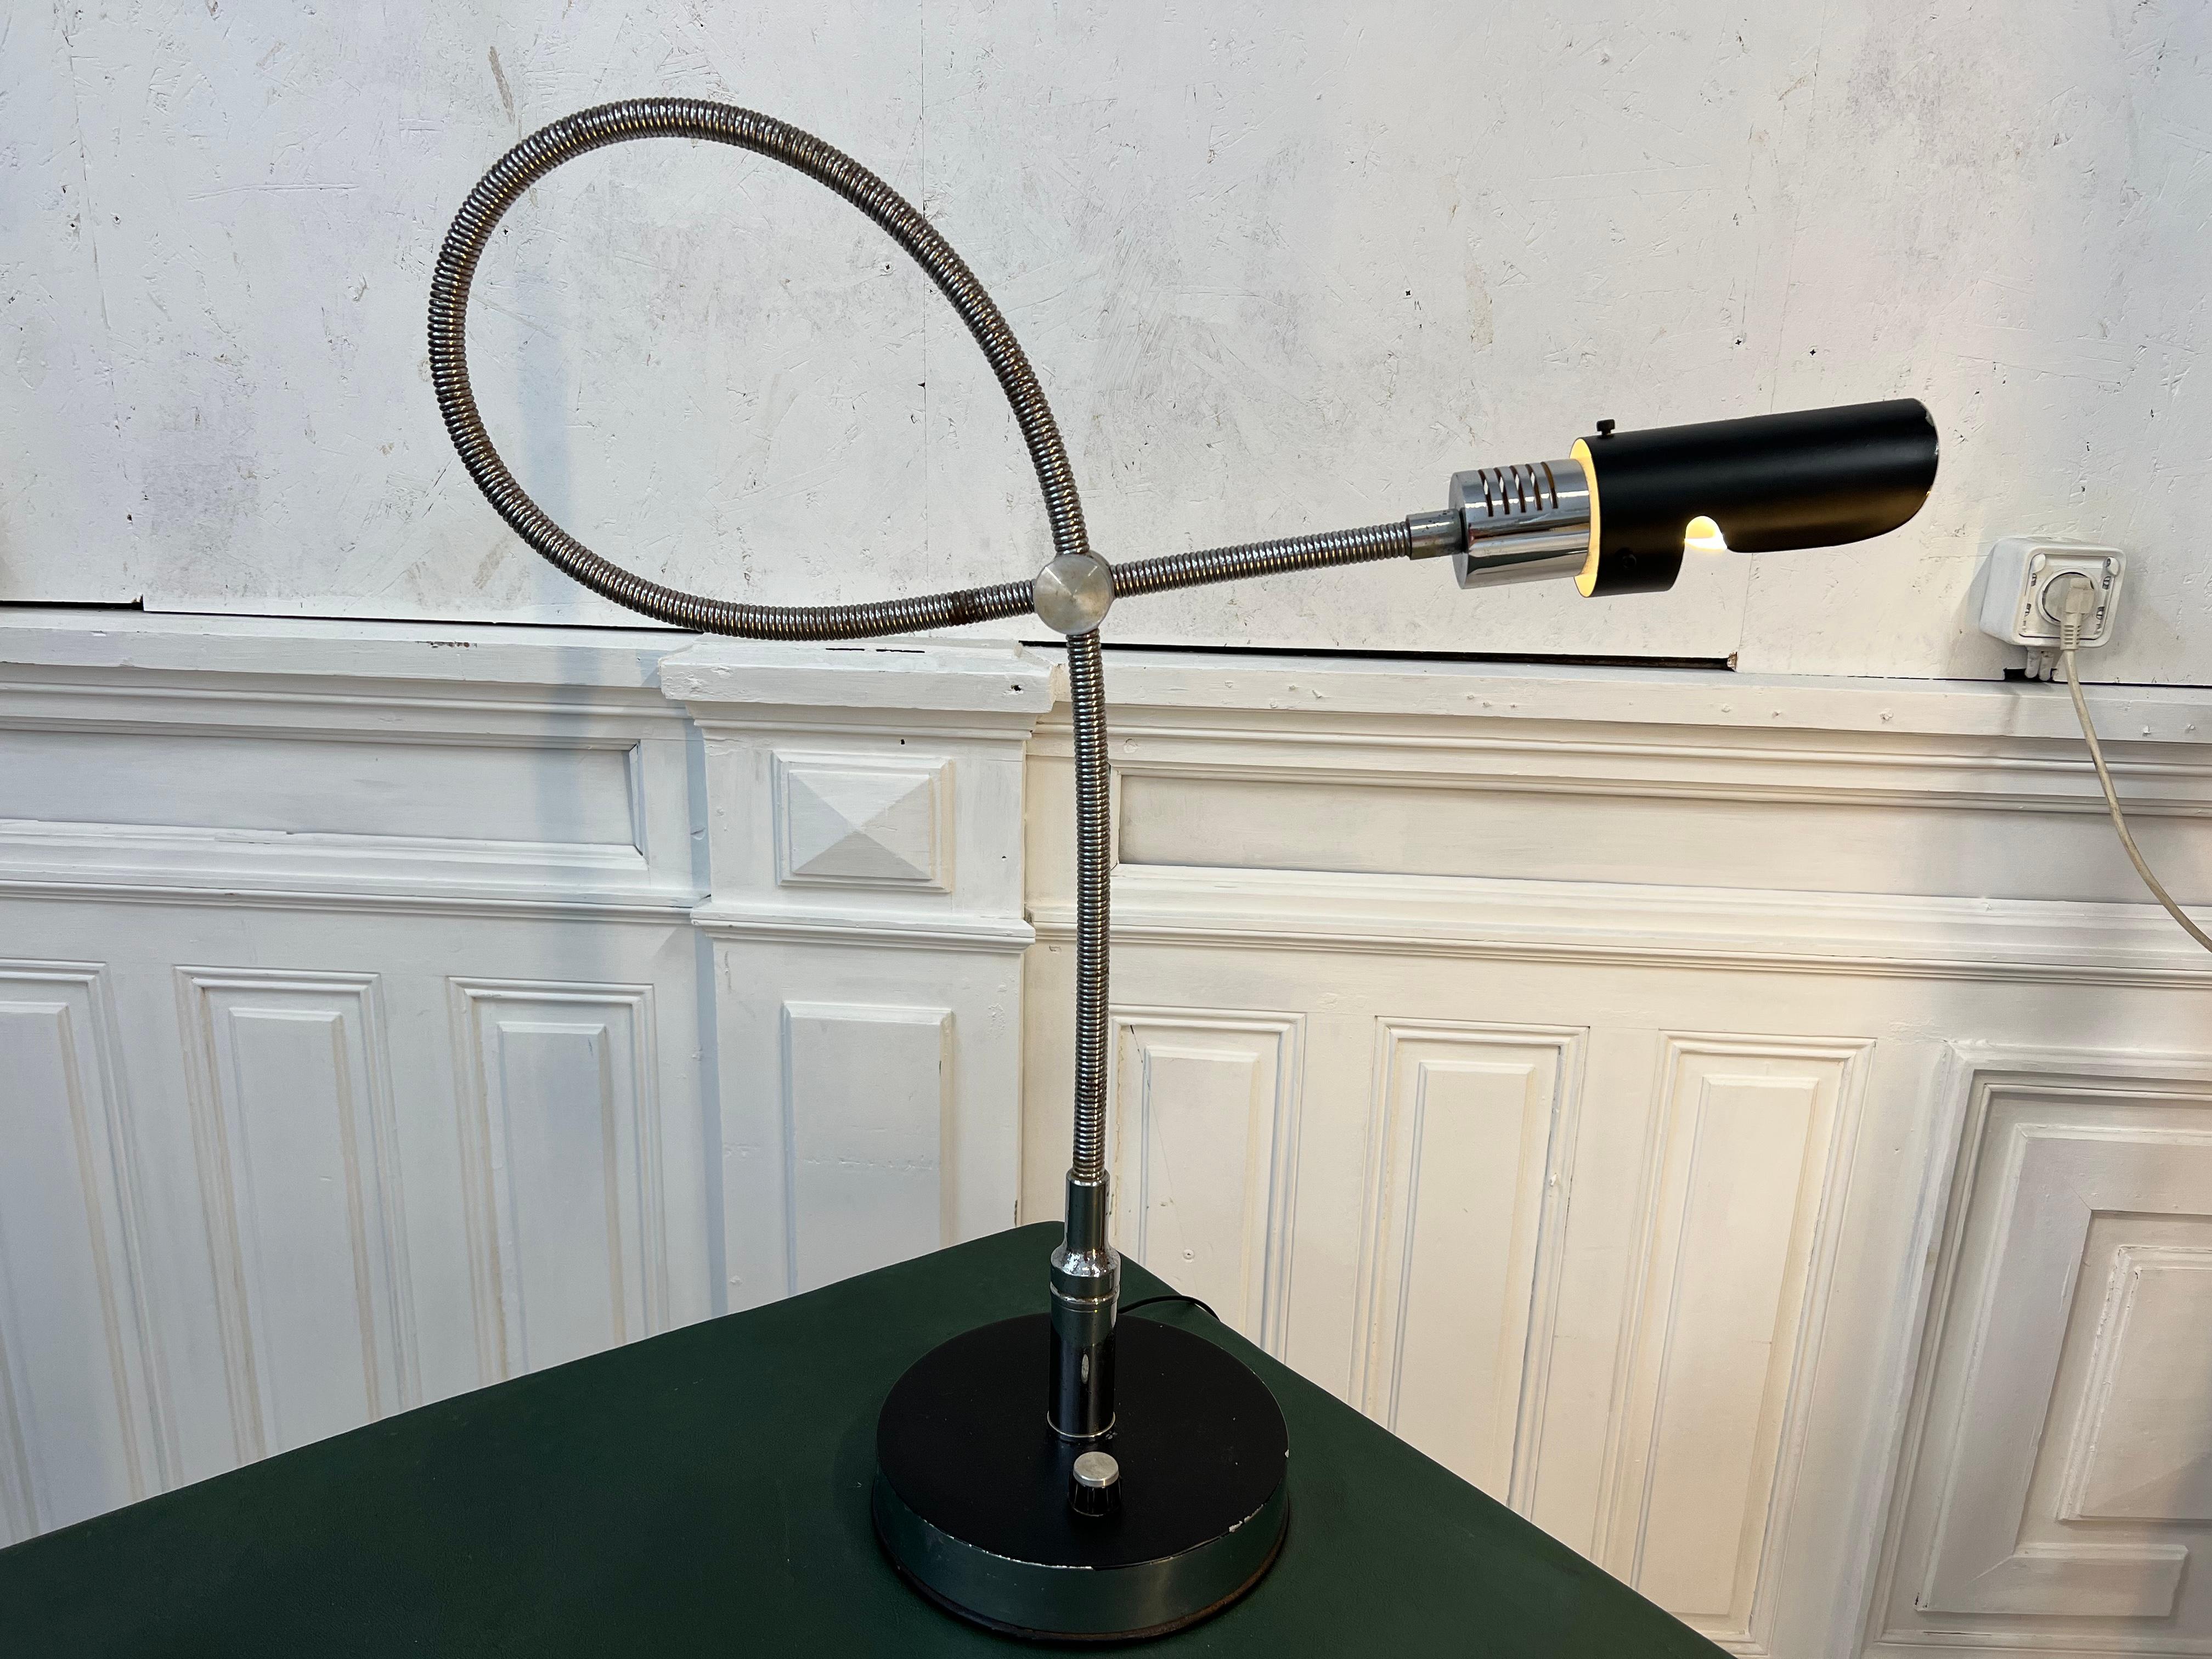 lampe industrielle réglable en hauteur et en longueur grâce à son ressort flexible
Il a été publié en 1969 par Mado et créé par Josep Maria Magem.
son look industriel et sa patine du temps vous feront plonger dans les années 70
